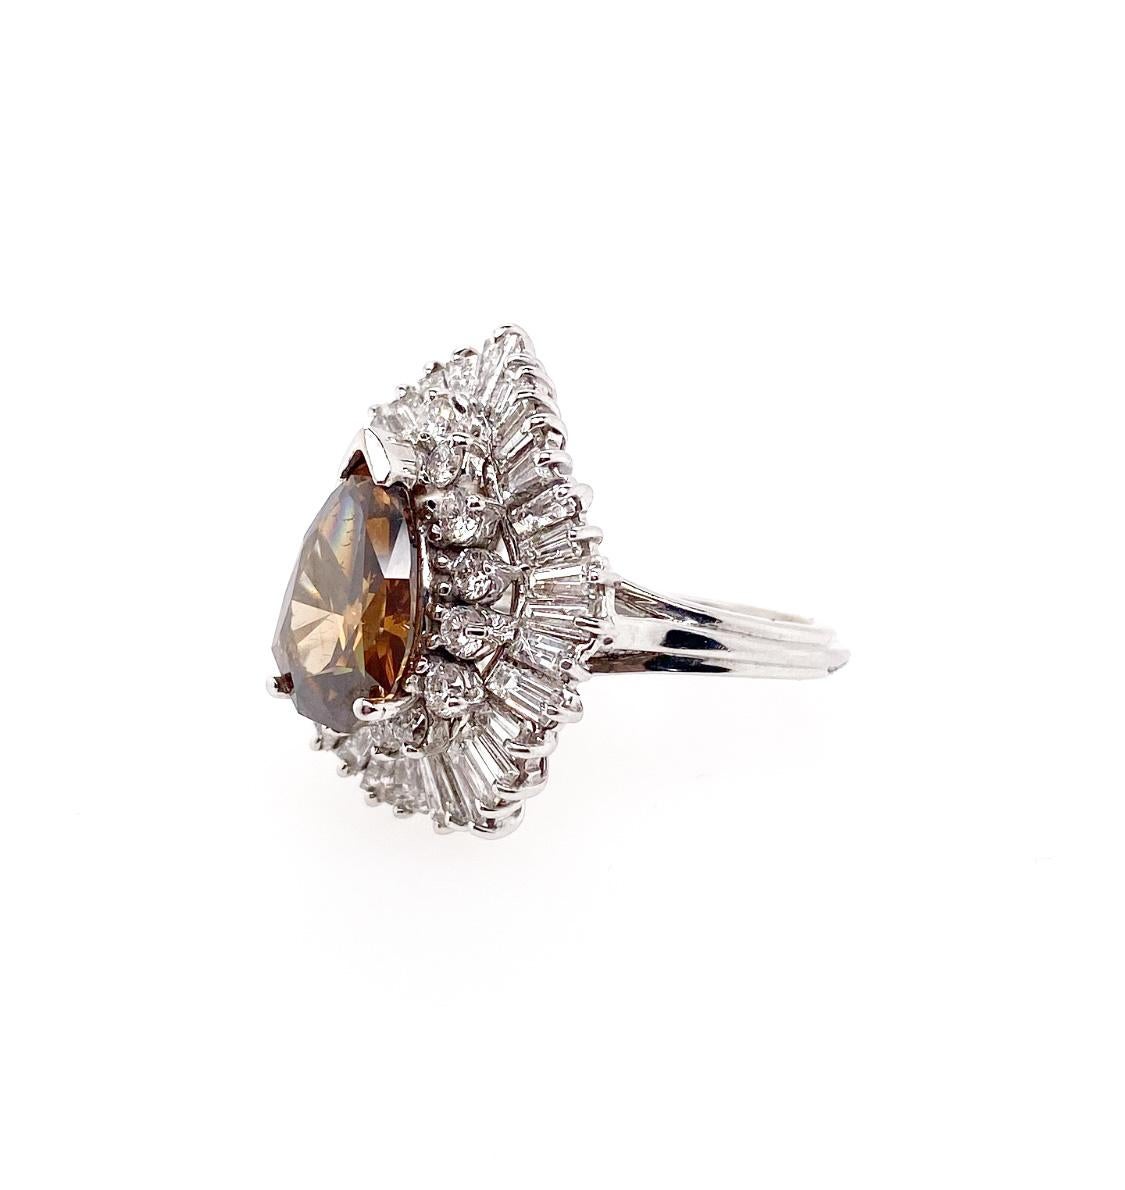 Le diamant Fancy Brown Shield de 3,20 carats certifié par le GIA est monté comme diamant central de la bague. Ce diamant rare, unique et fabuleux, est entouré de diamants ronds et baguettes brillants dans un style ballerine. Cette bague est